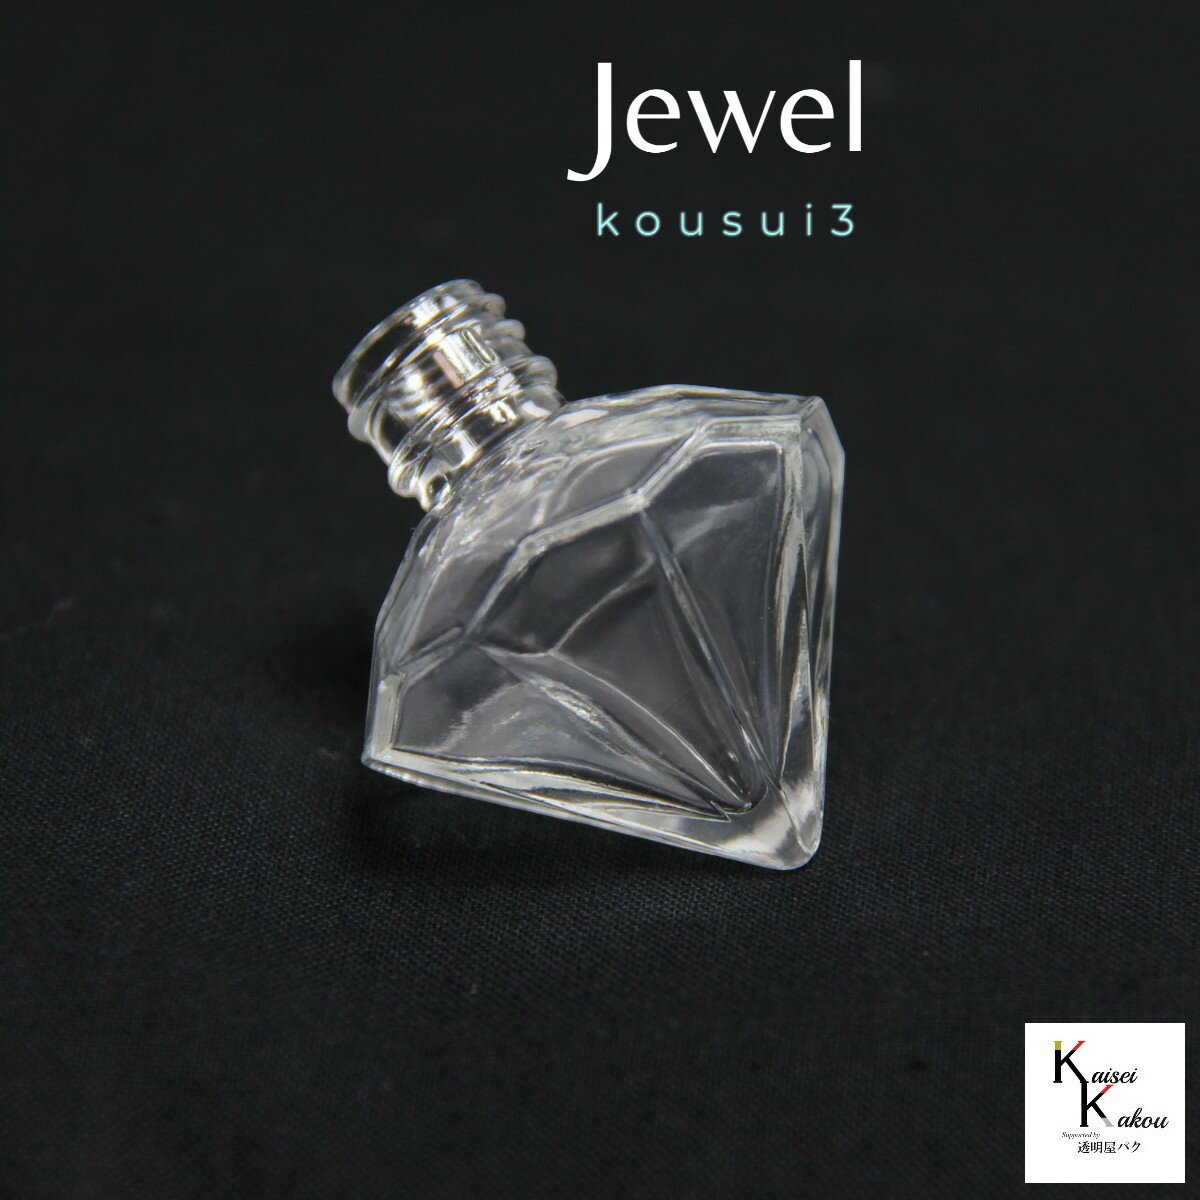 香水 瓶 ボトル 「kousui3 ジュエル 1個」 リッチ